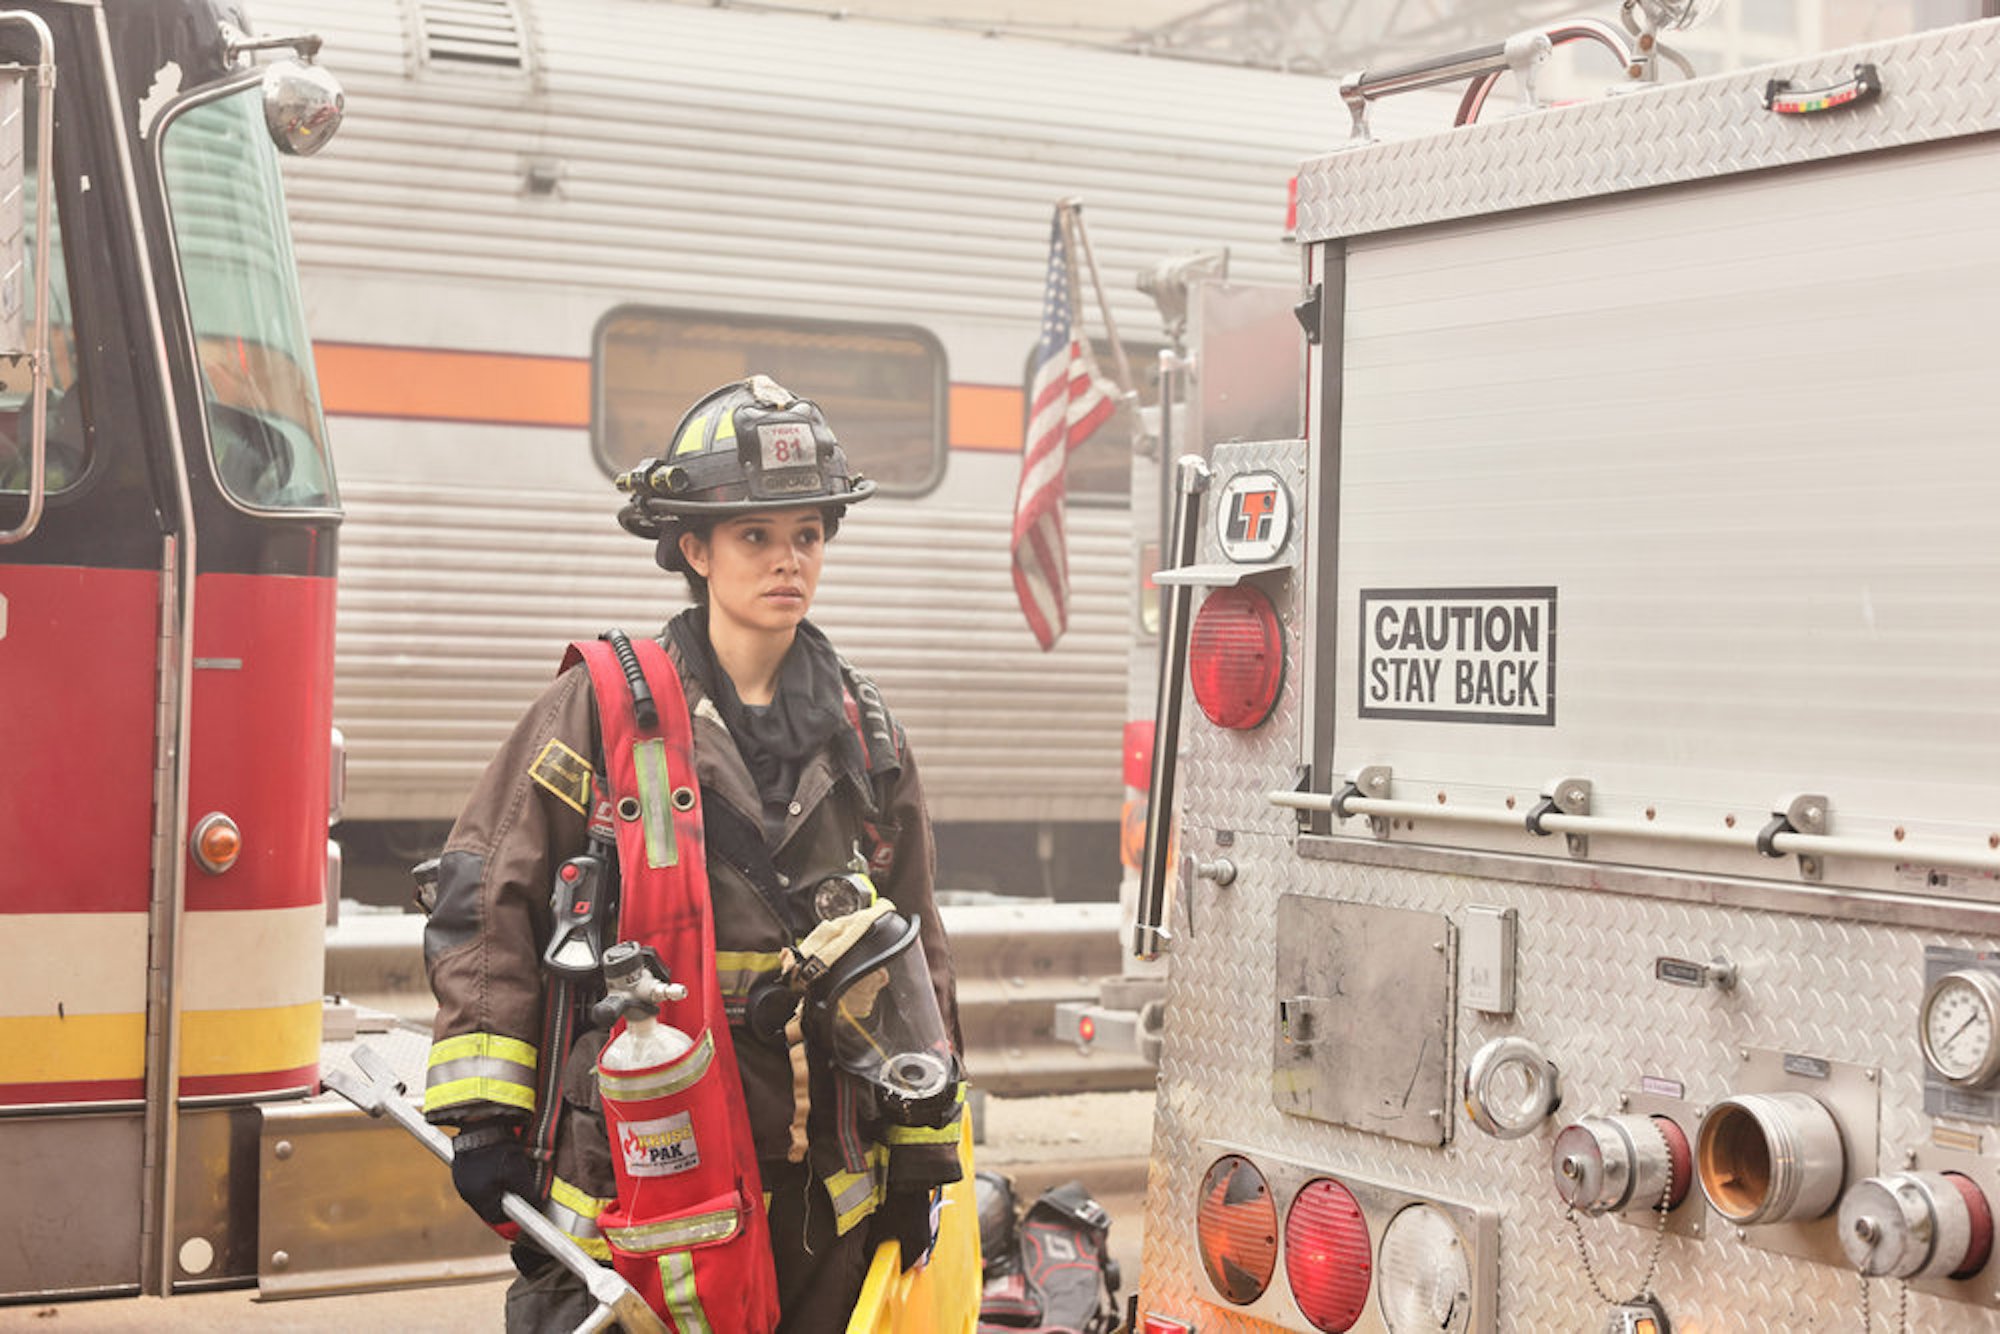 Stella Kidd in 'Chicago Fire' Season 10 Episode 10 dressed in firefighting gear